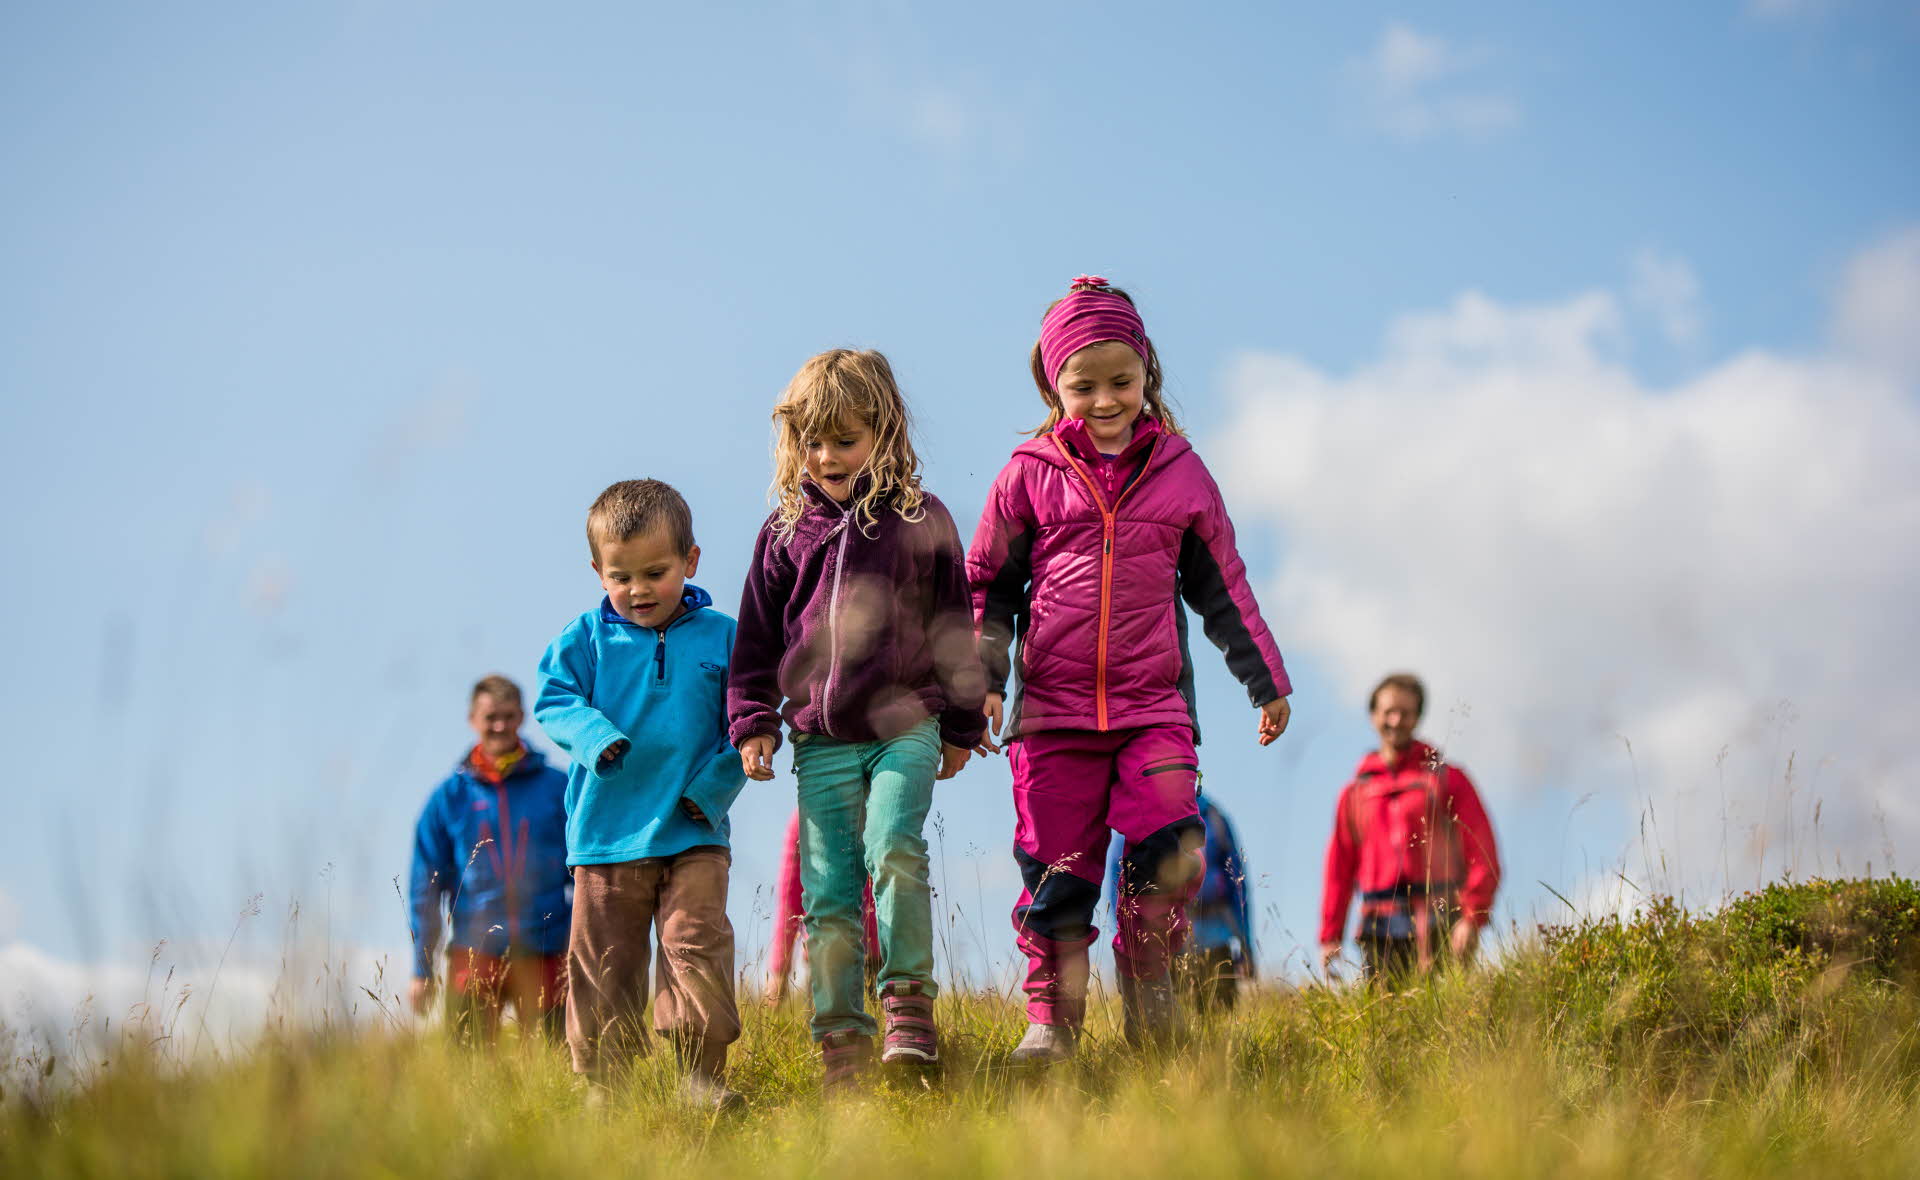 Tres niños sonrientes en una excursión a Myrkdalen, con cuatro adultos detrás de ellos